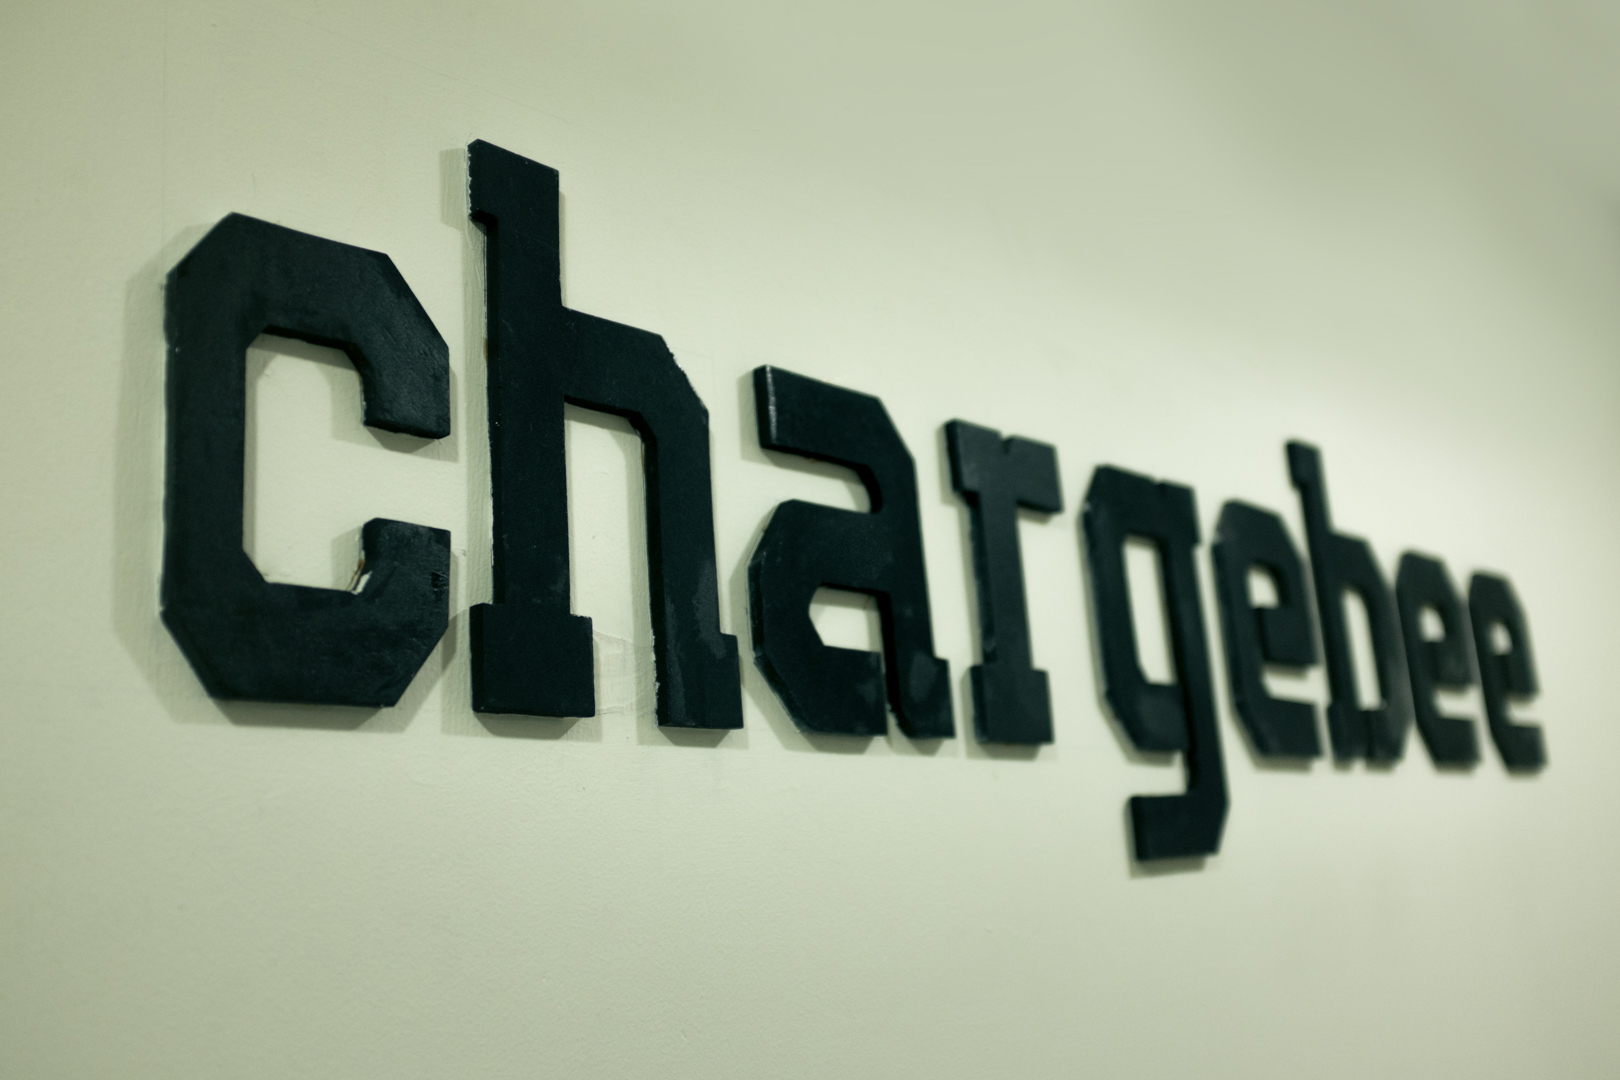 chargebee logo photograph